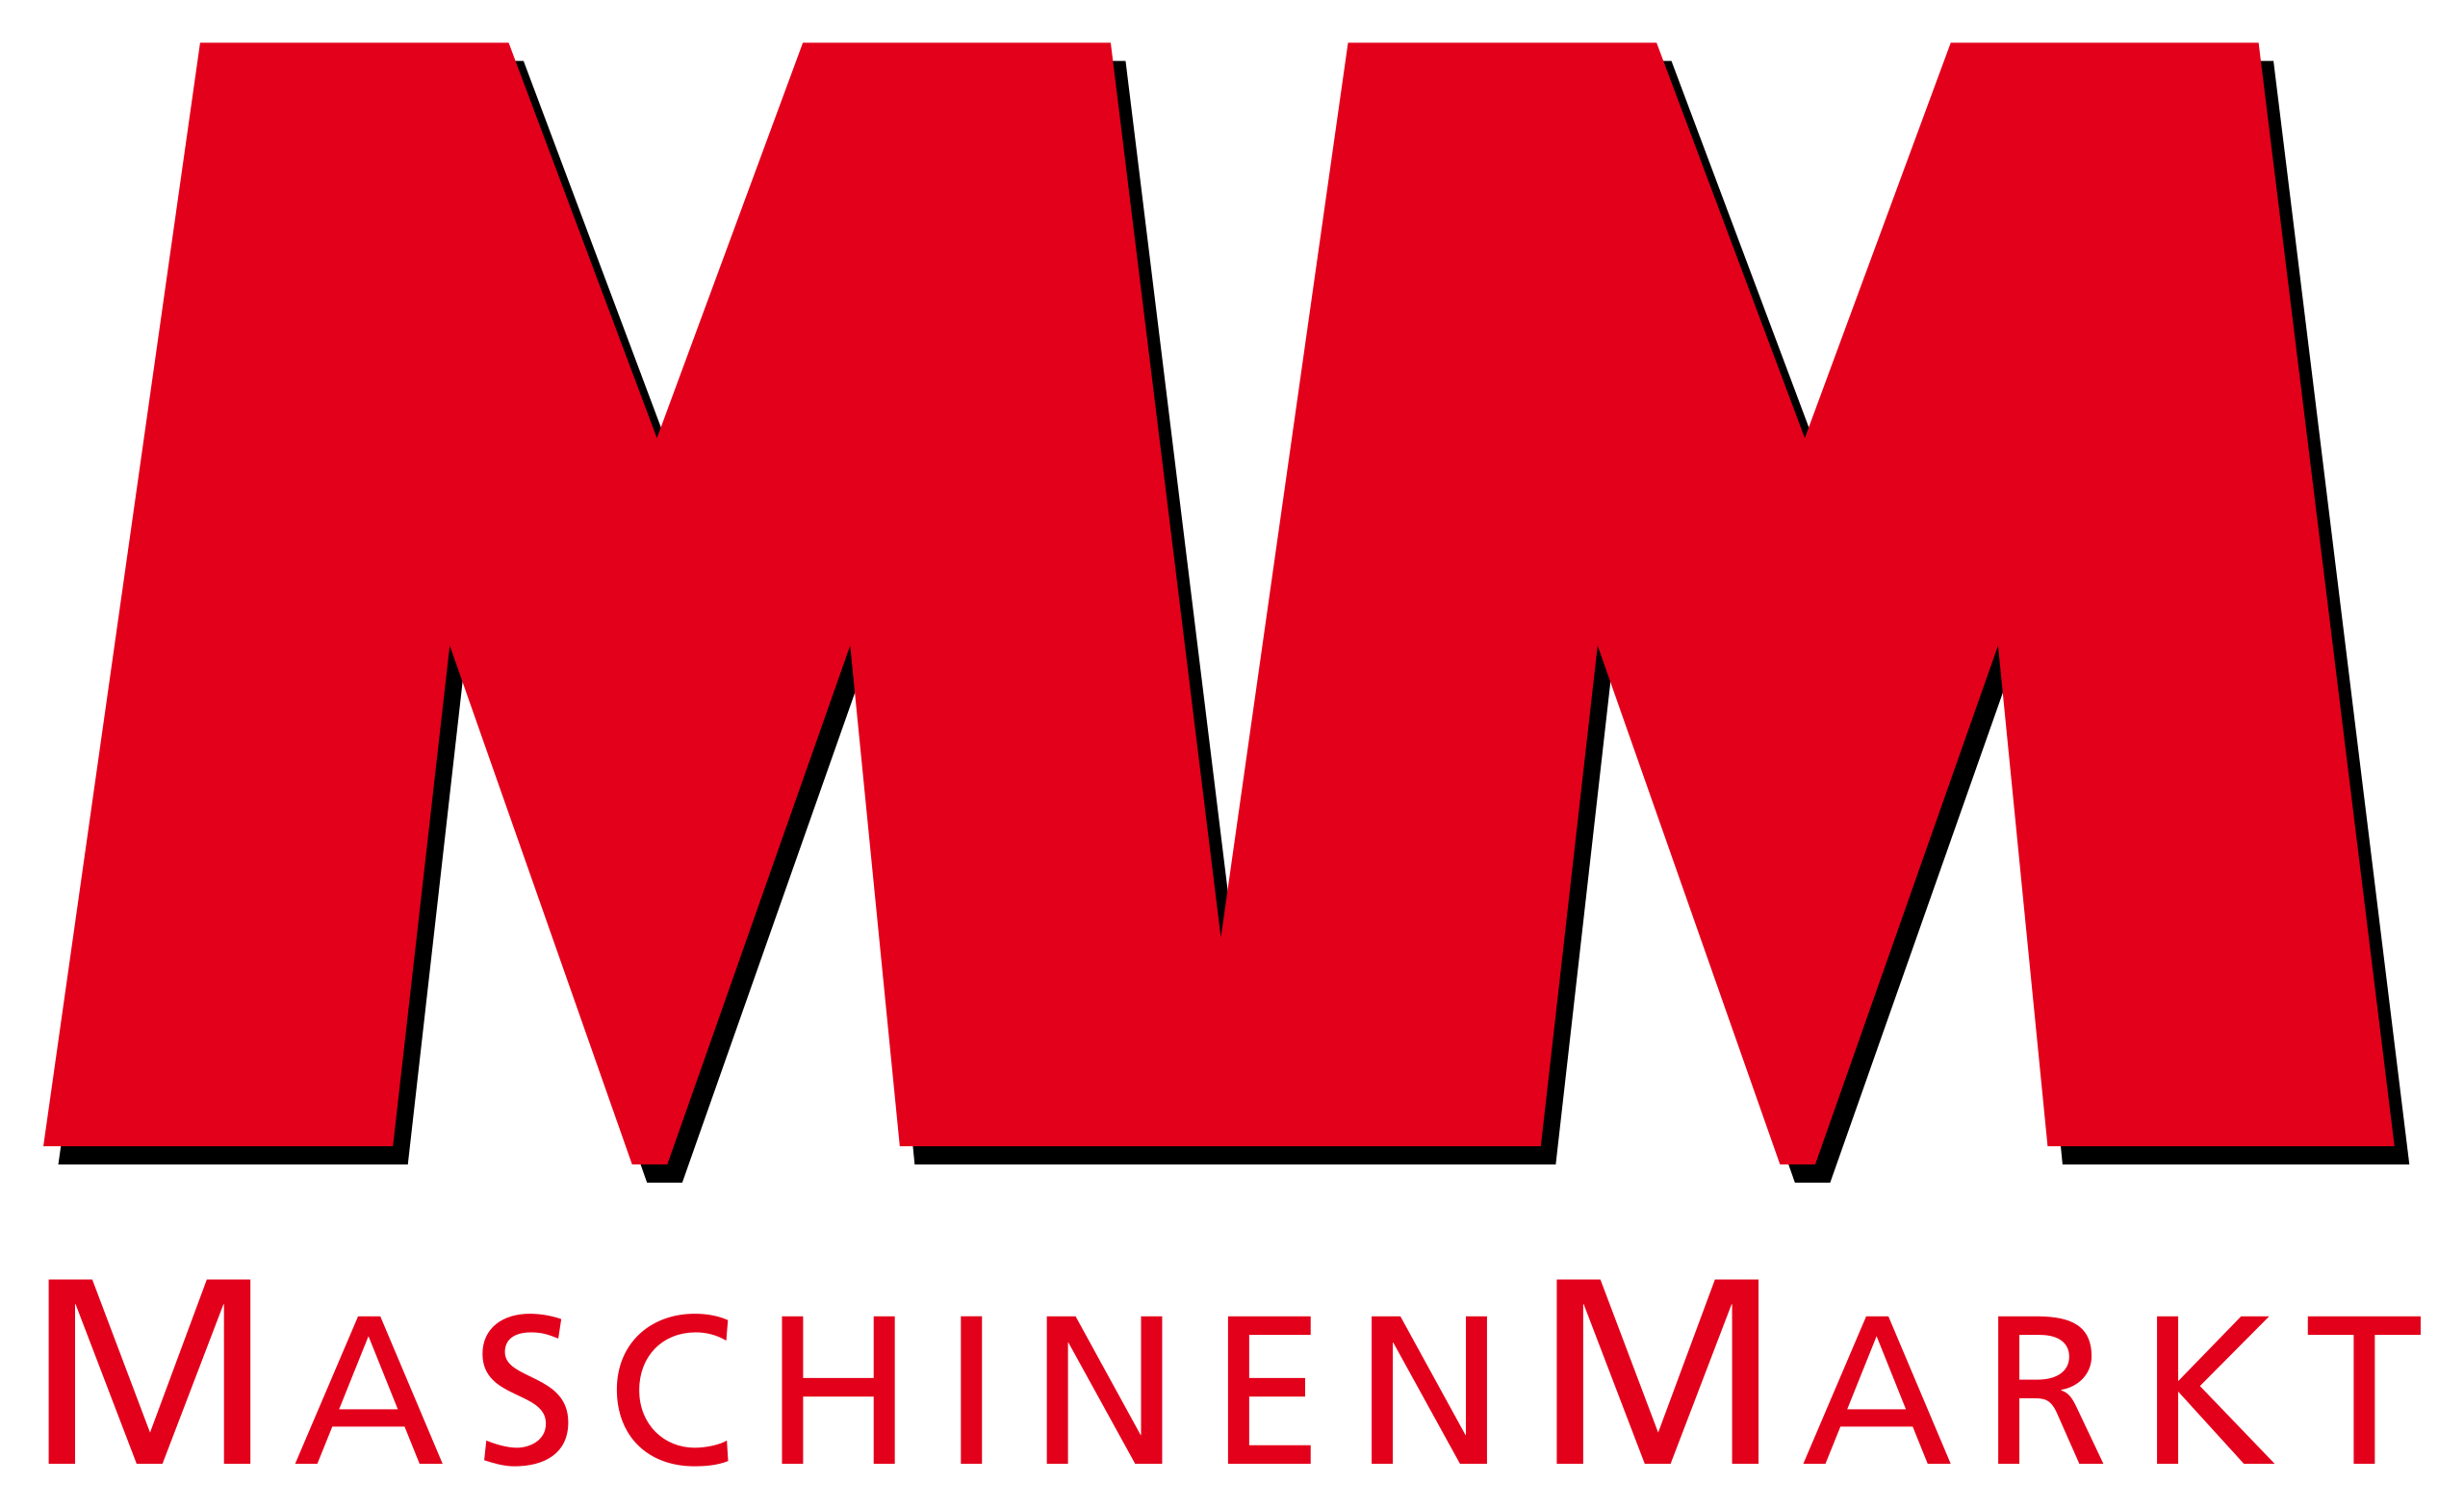 File:MM MaschinenMarkt Logo 4c 2019.jpg - Wikimedia Commons